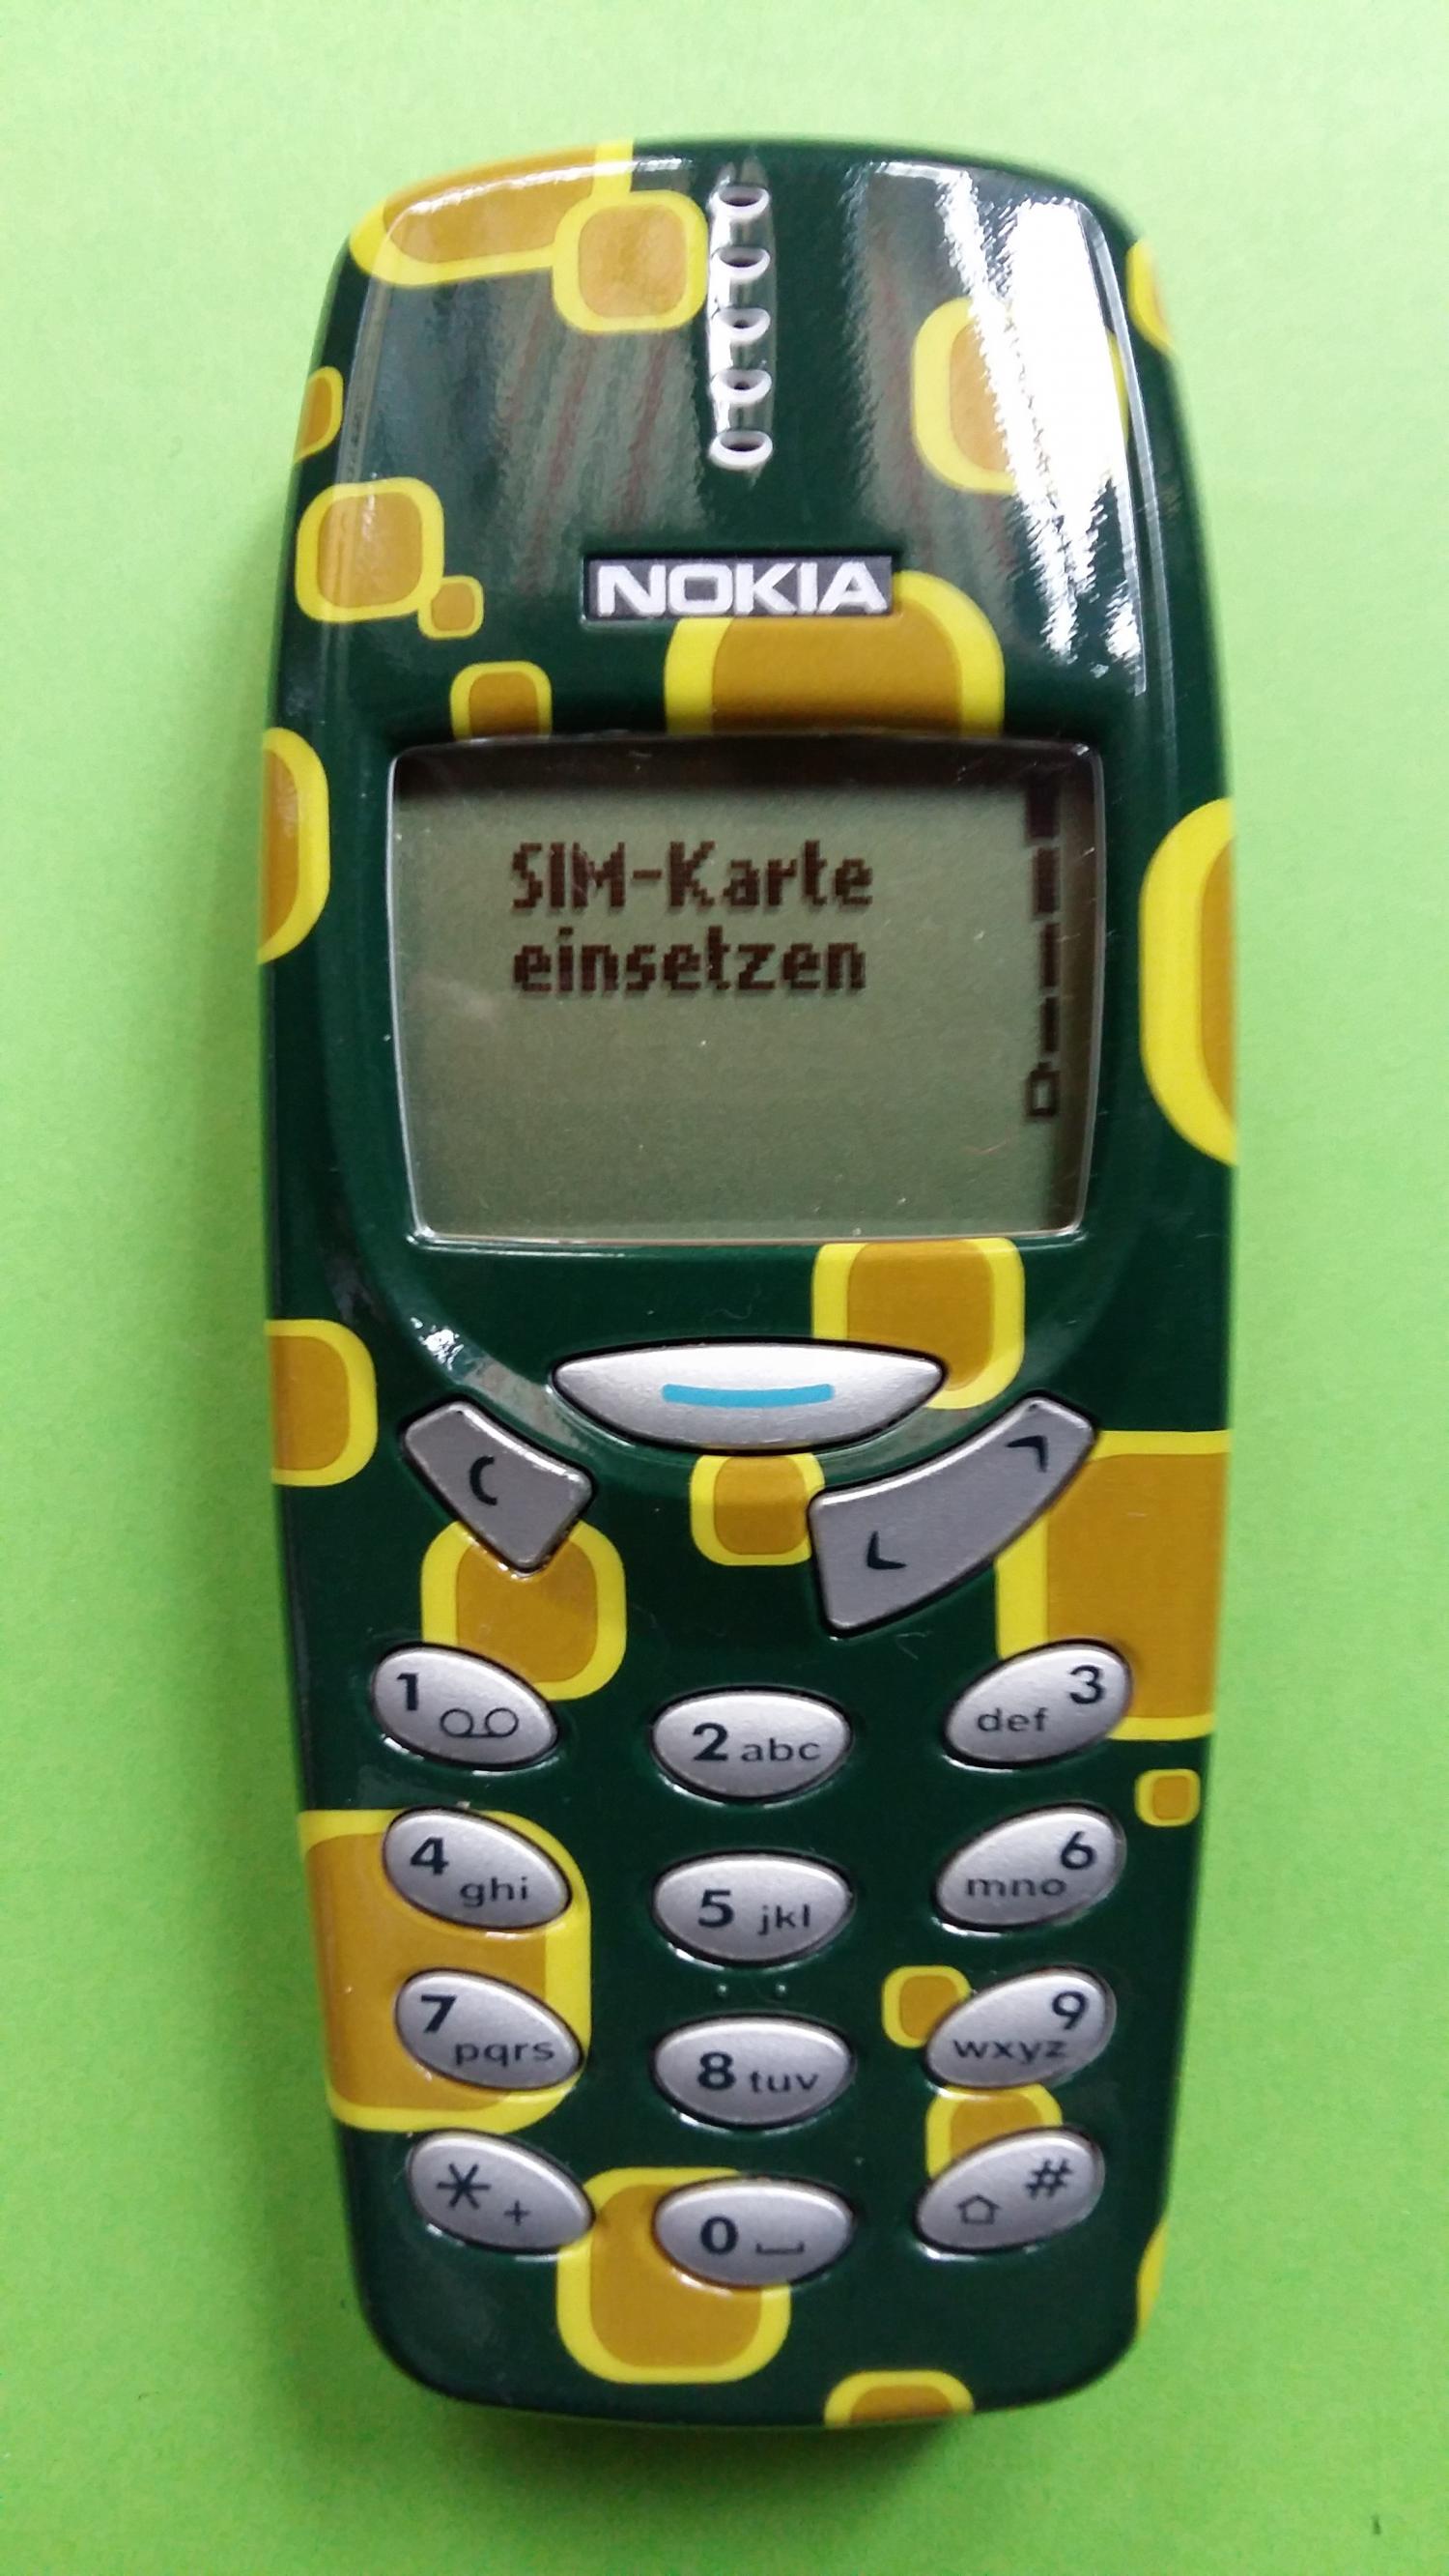 image-7306835-Nokia 3310 (5)1.jpg